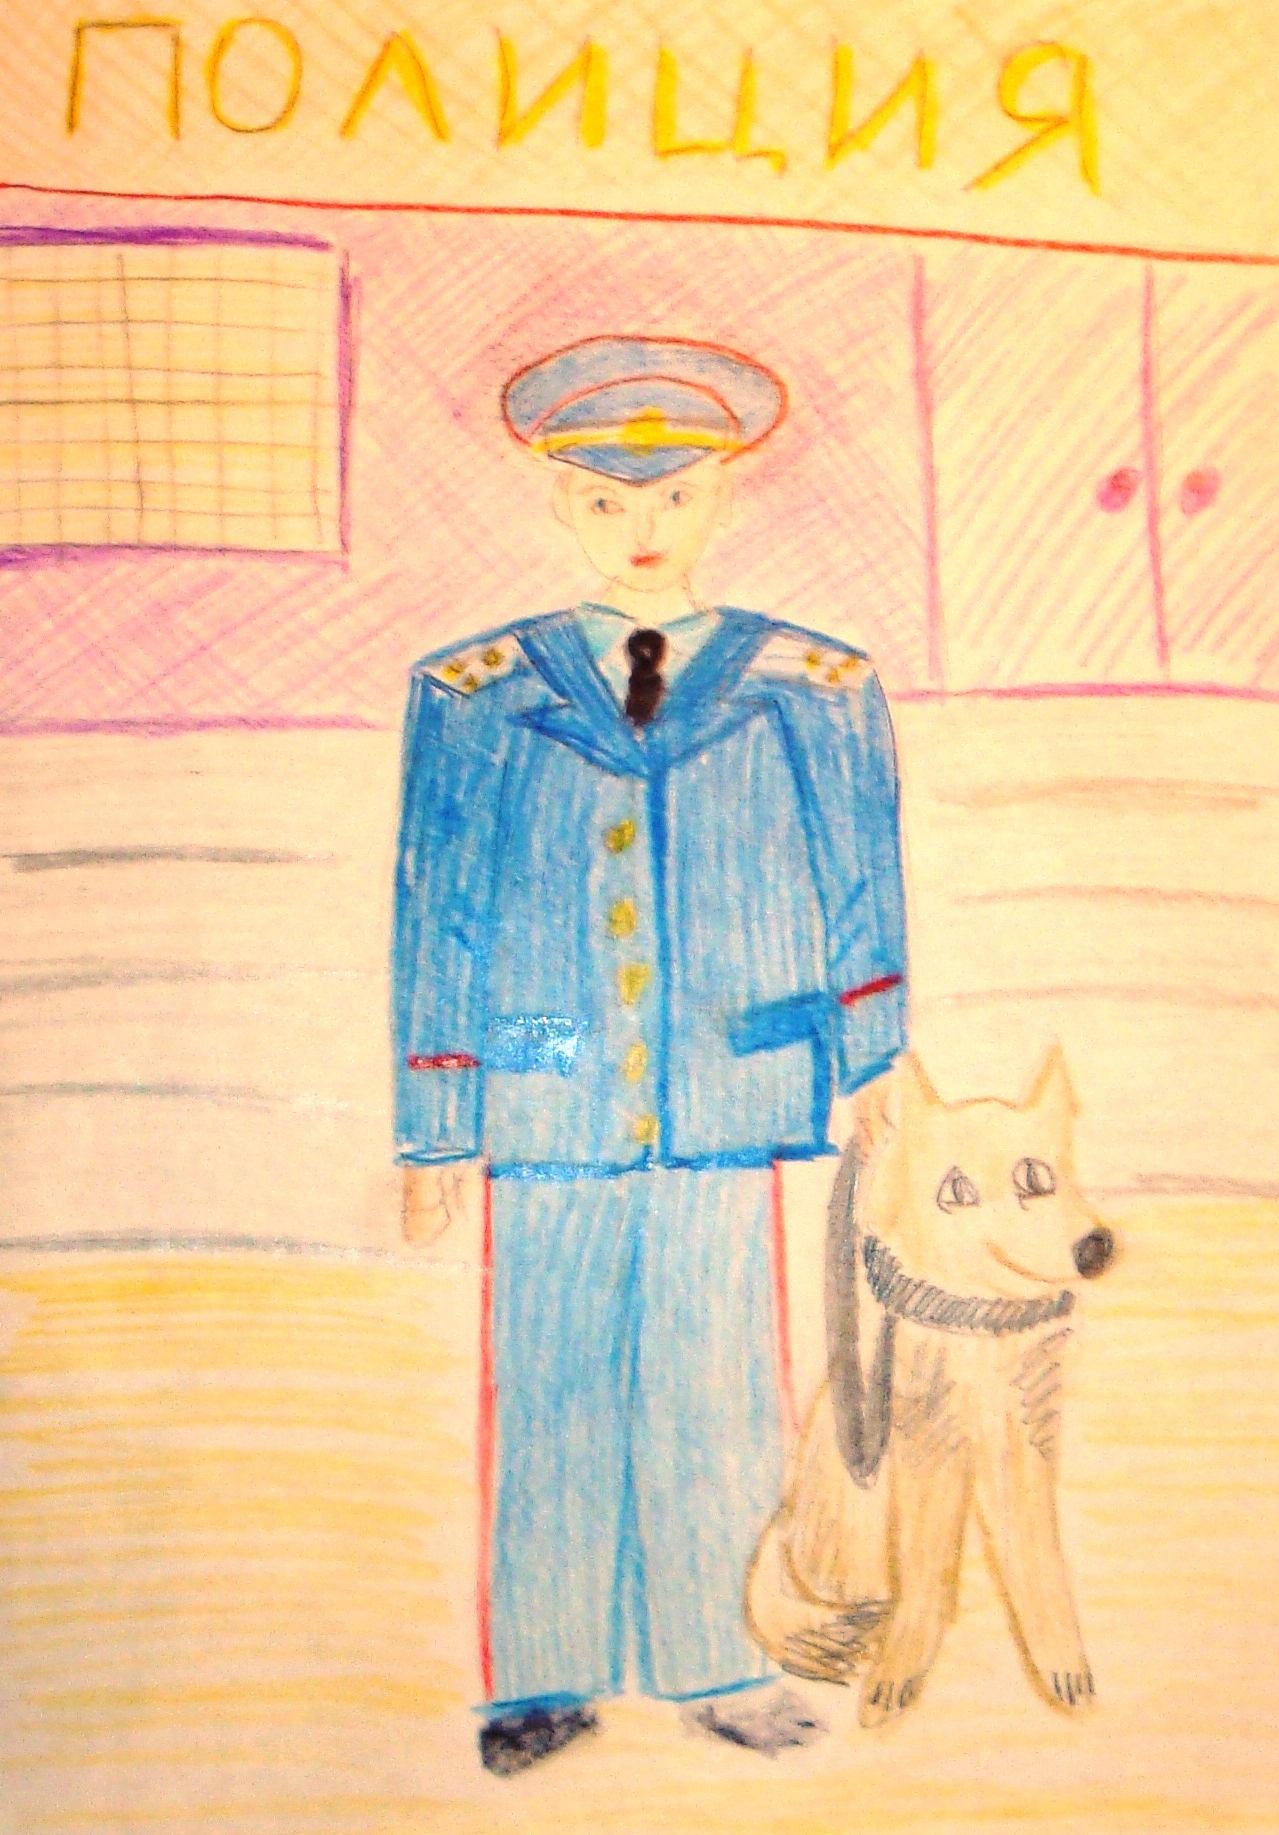 Полицейский рисунок